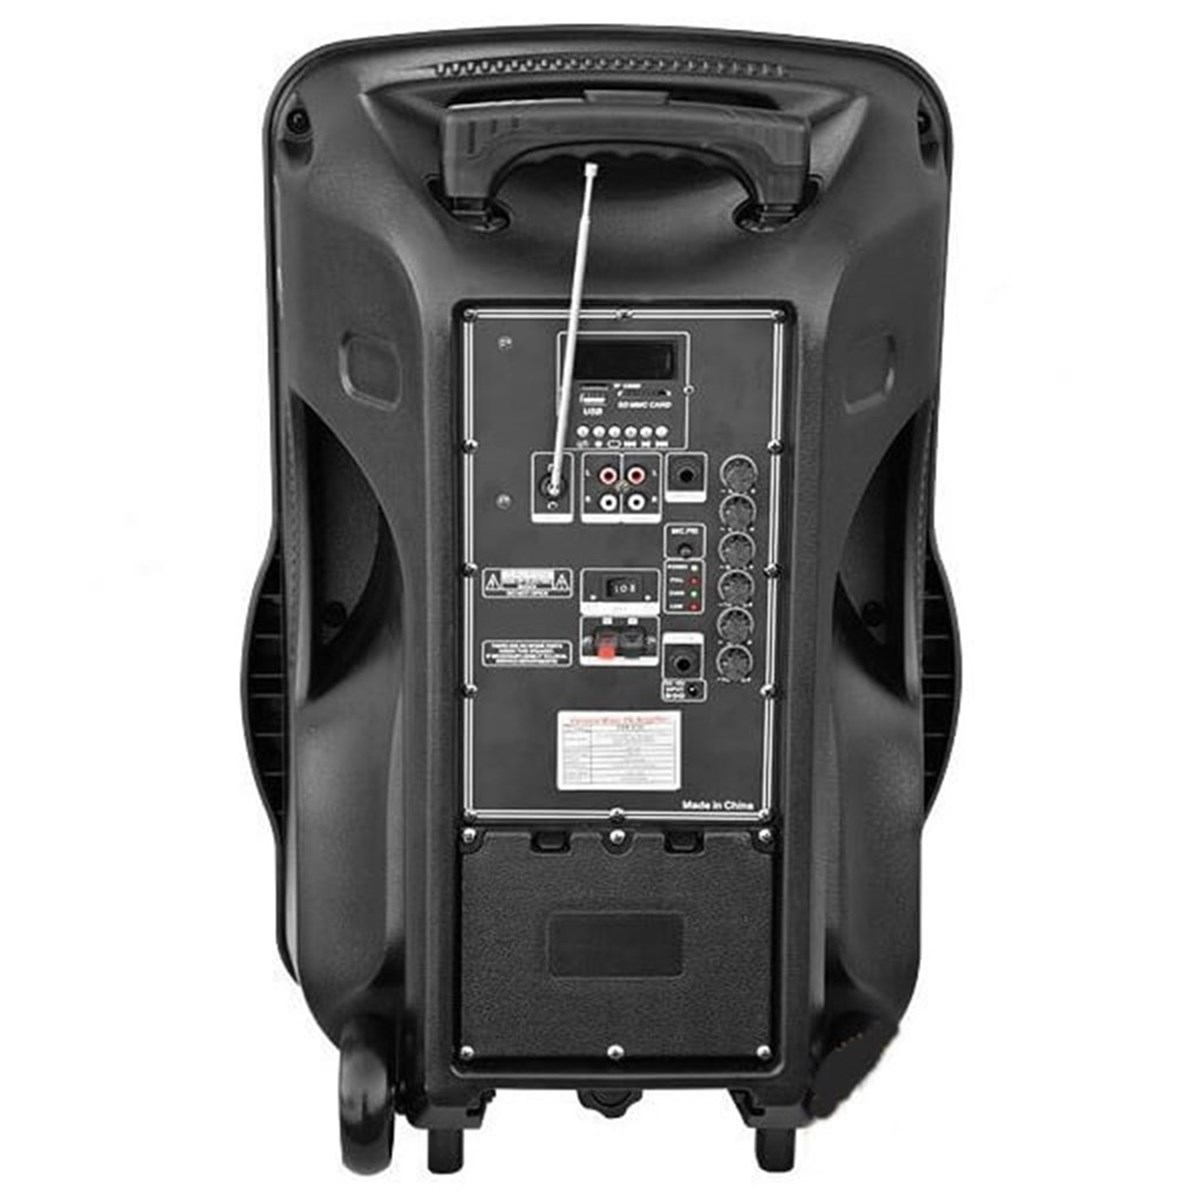 Lastvoice Ls-1912E Taşınabilir Ses Sistemi Hoparlör Çift Mikrofonlu Şarjlı  800 WATT